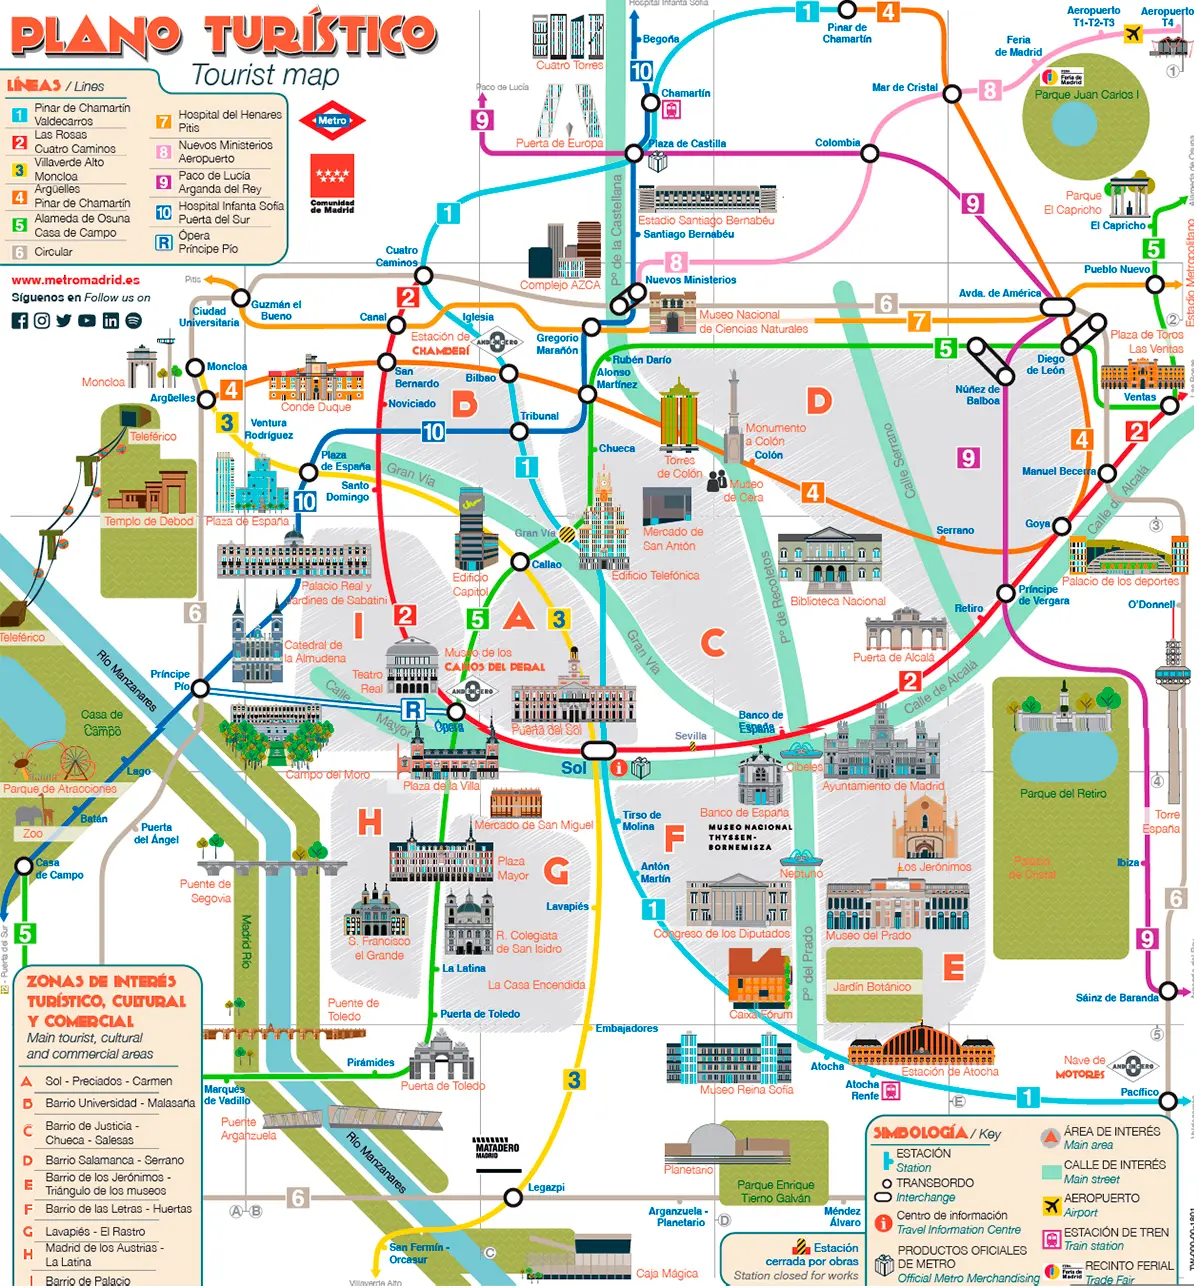 Plano turístico del metro de Madrid.